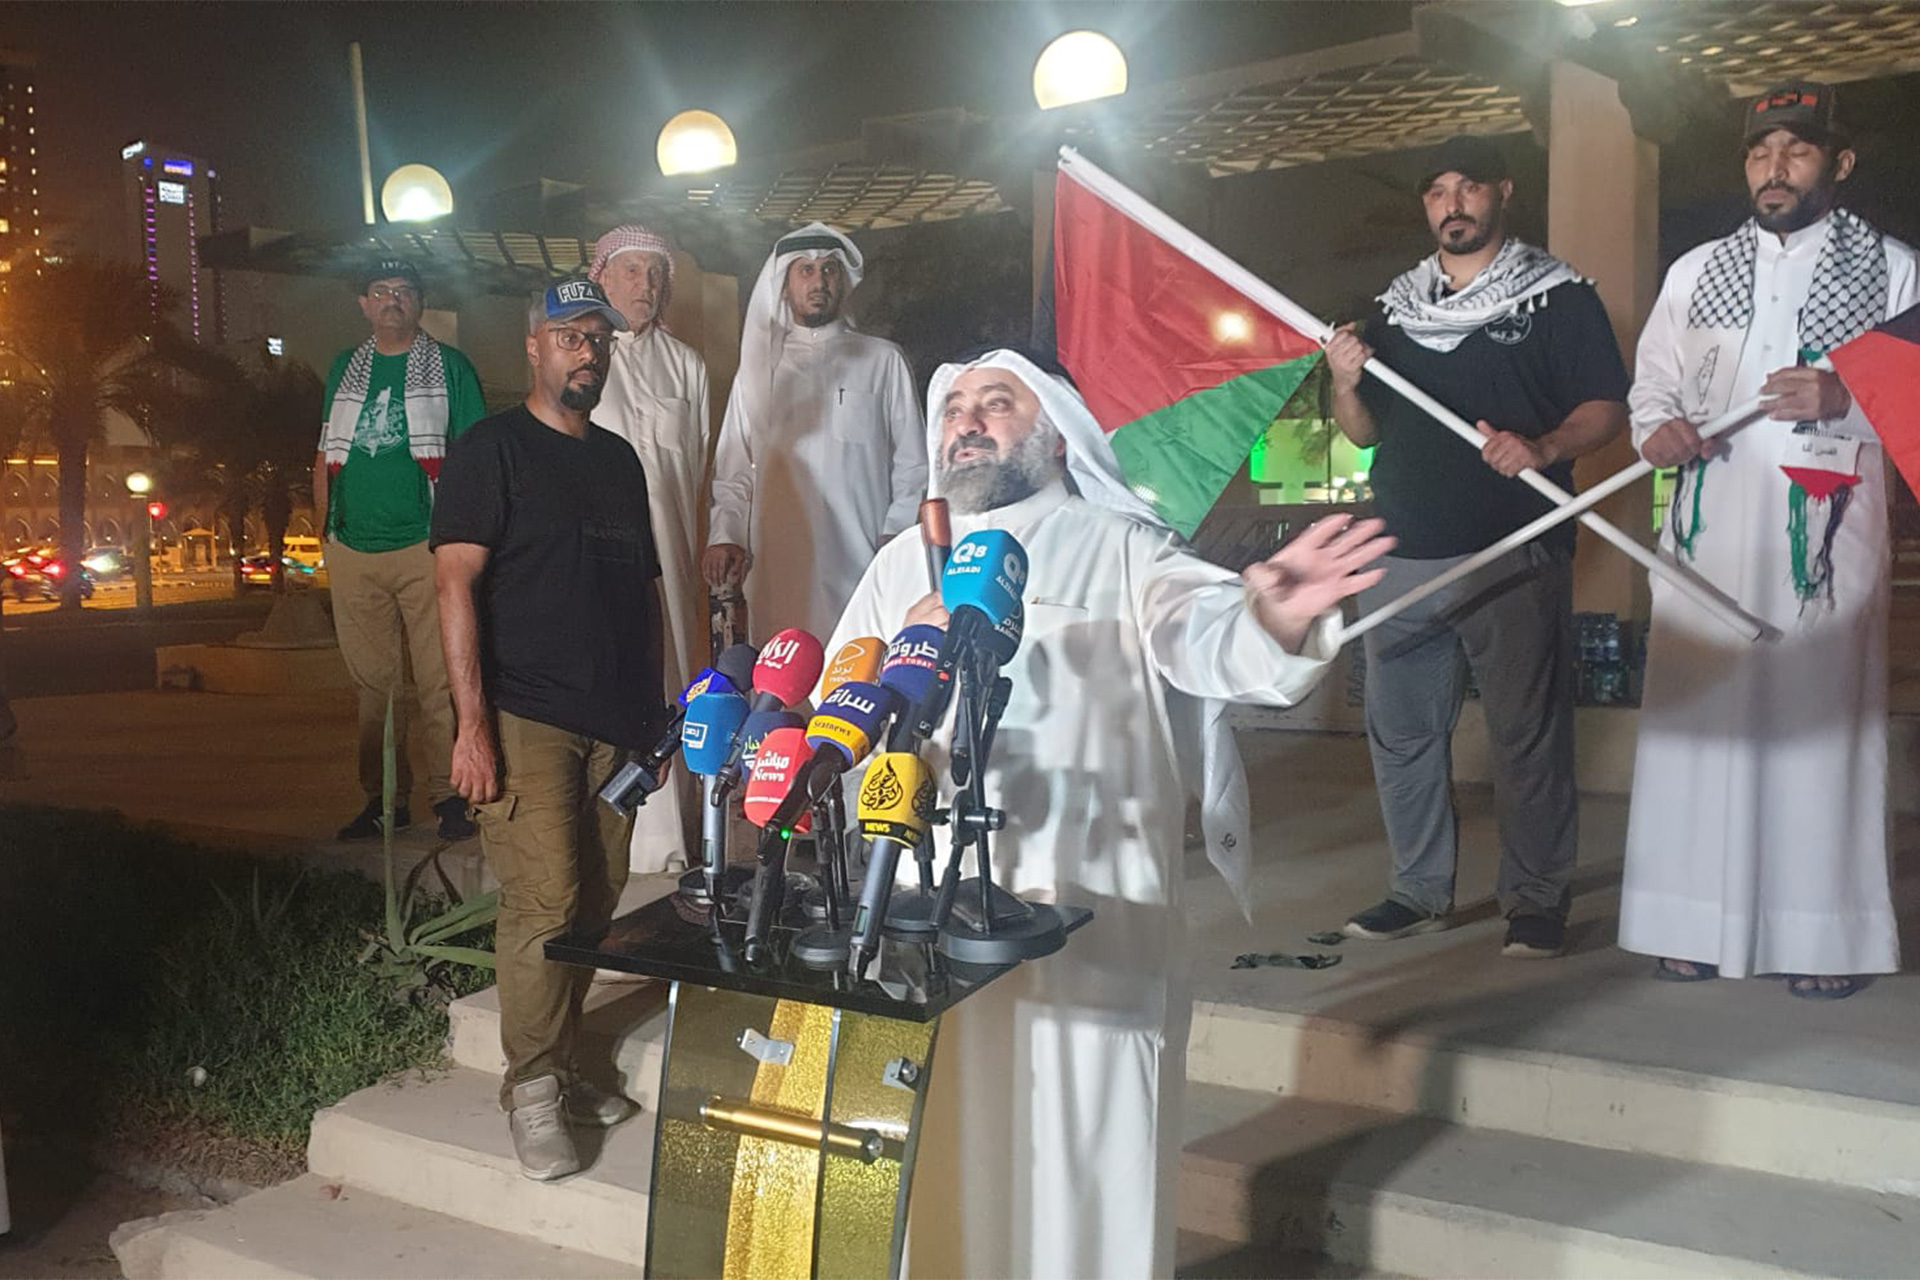 وقفة تضامنية وحملة إغاثية في الكويت دعما للمقاومة الفلسطينية | سياسة – البوكس نيوز